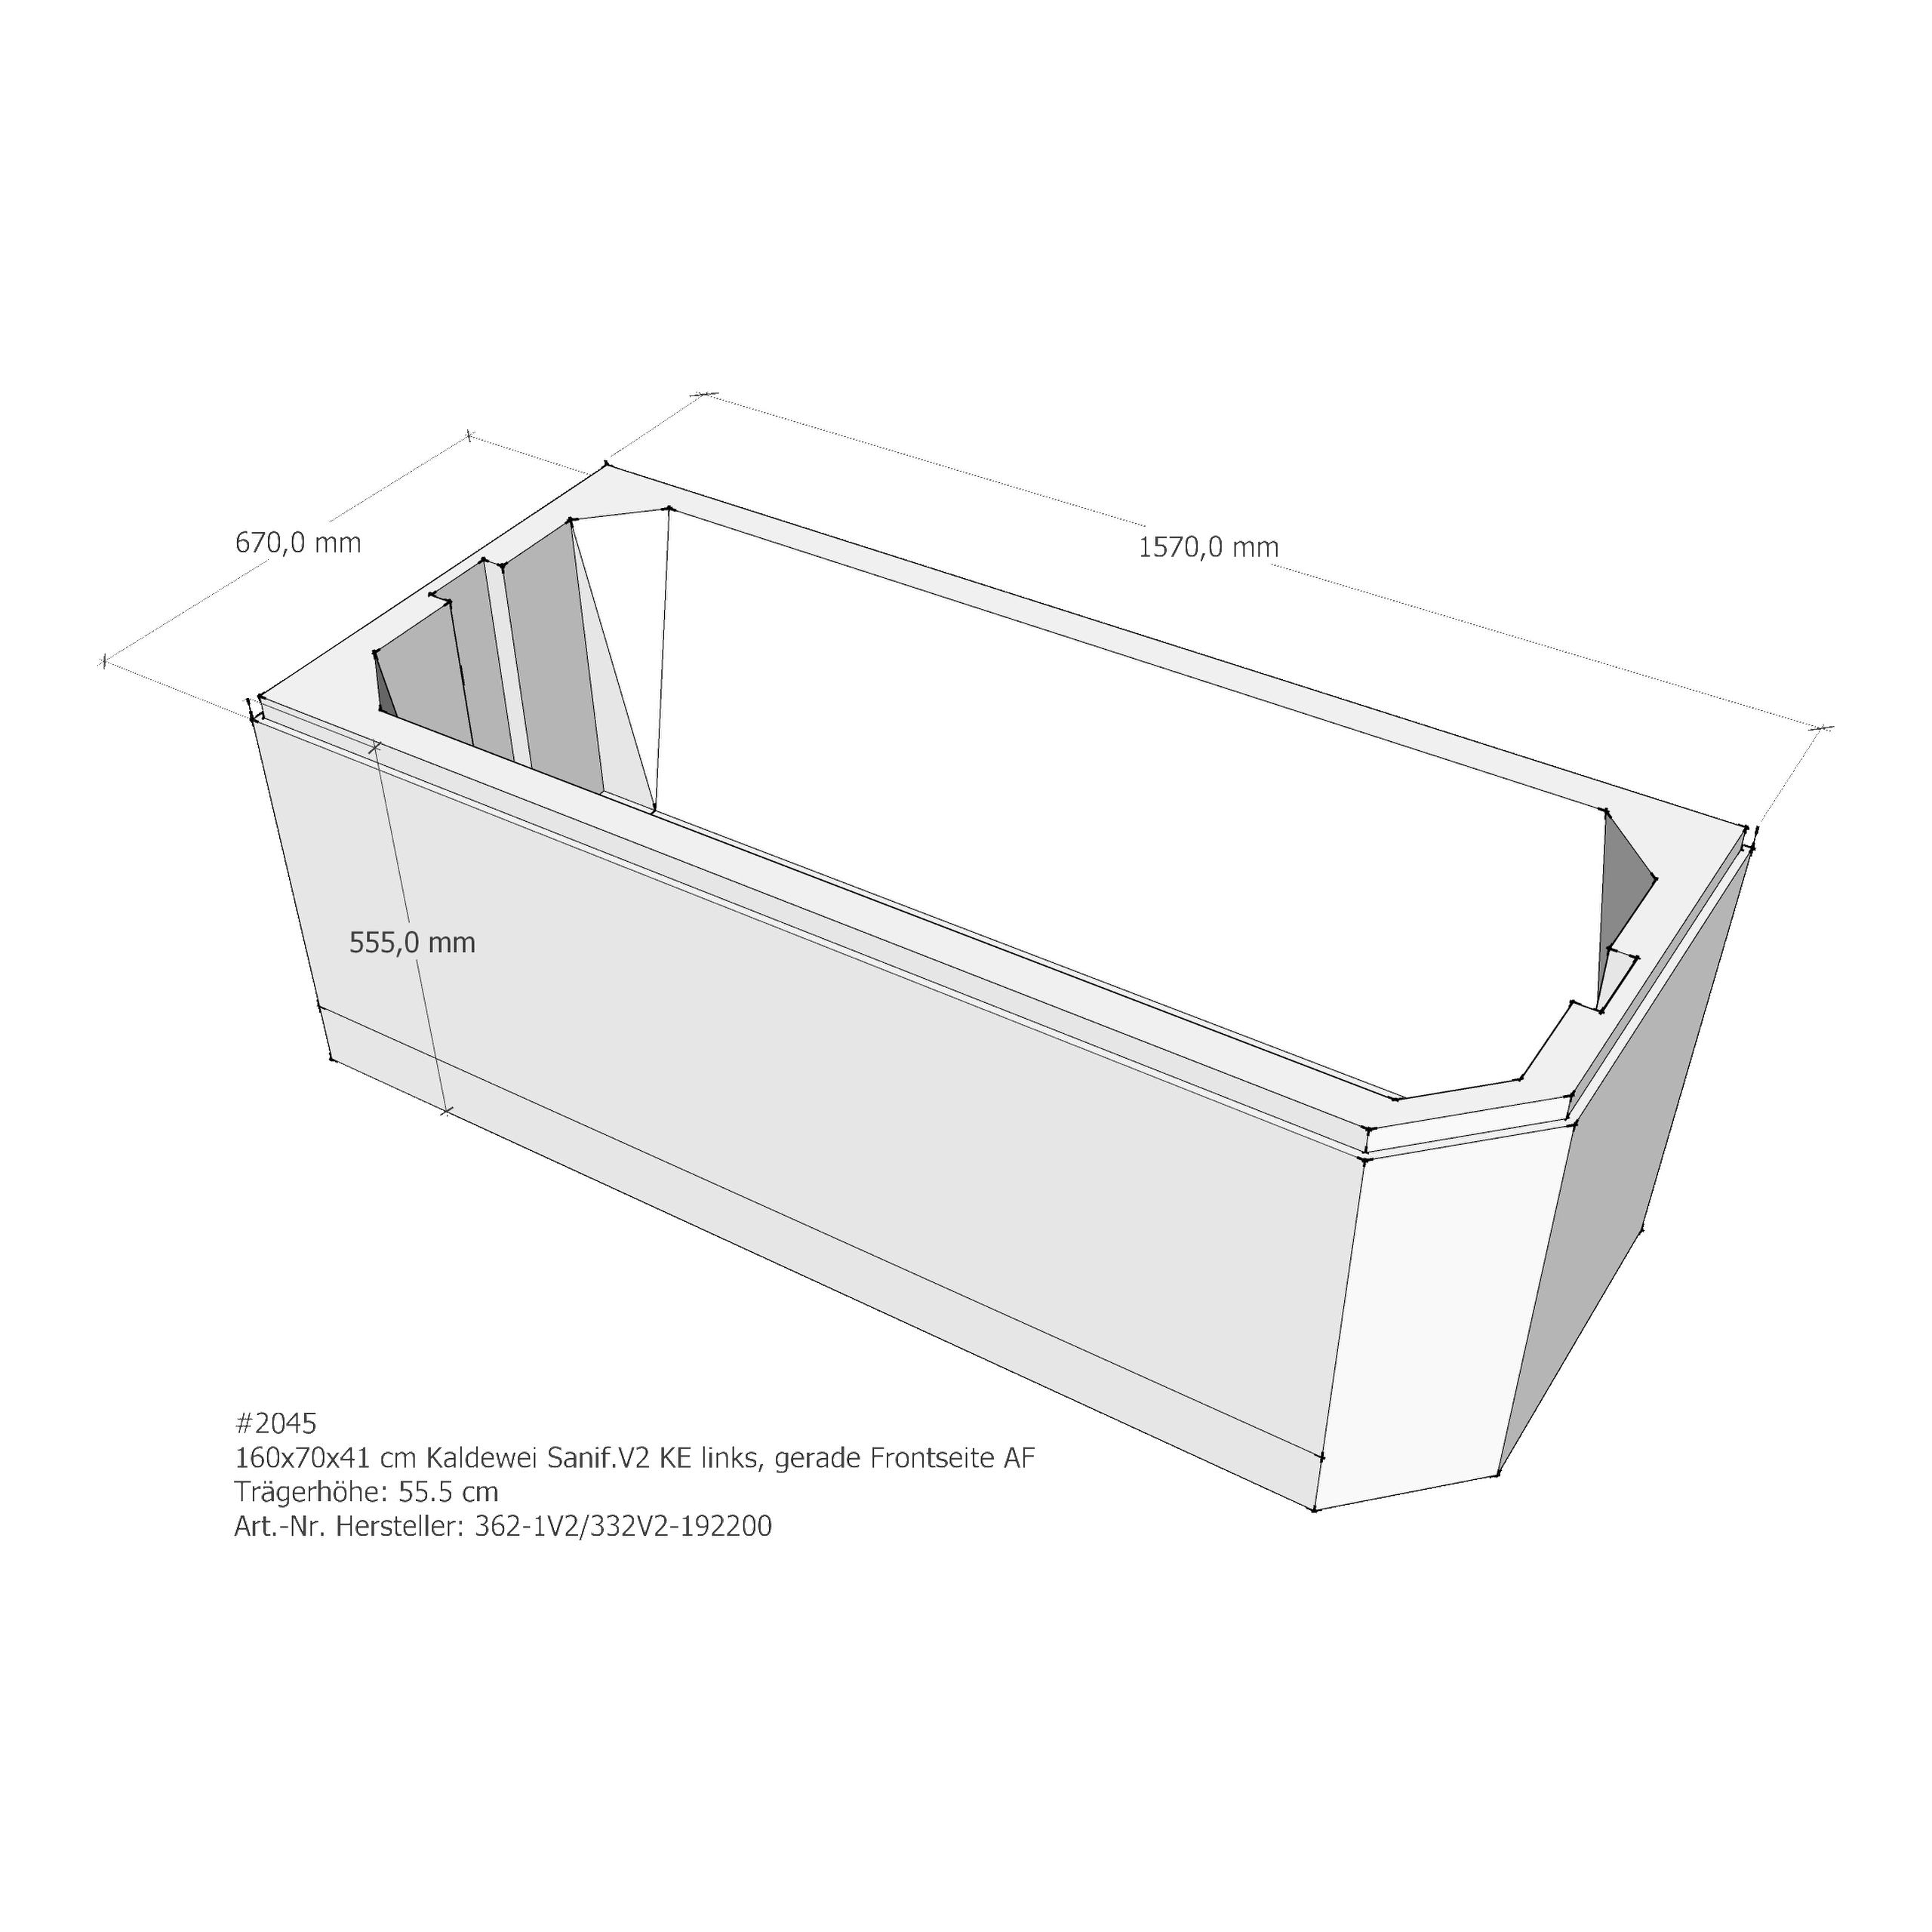 Badewannenträger für Kaldewei Saniform V2 KE links 160 × 70 × 41 cm